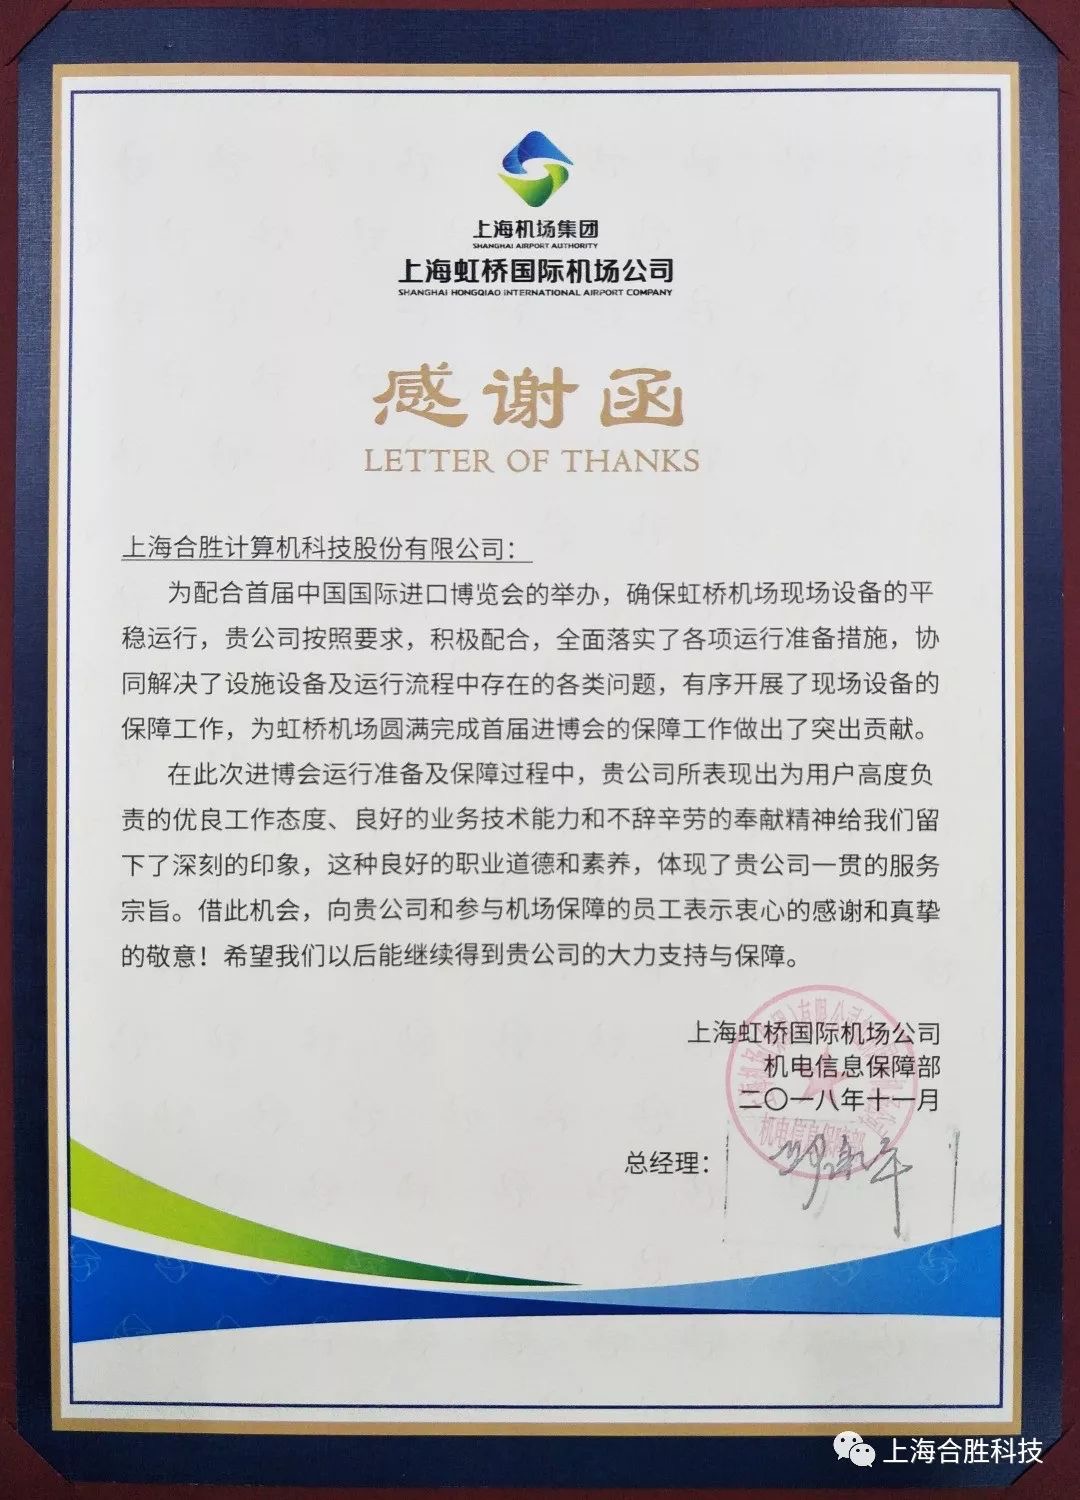 上海虹桥国际机场公司向合胜科技致感谢函